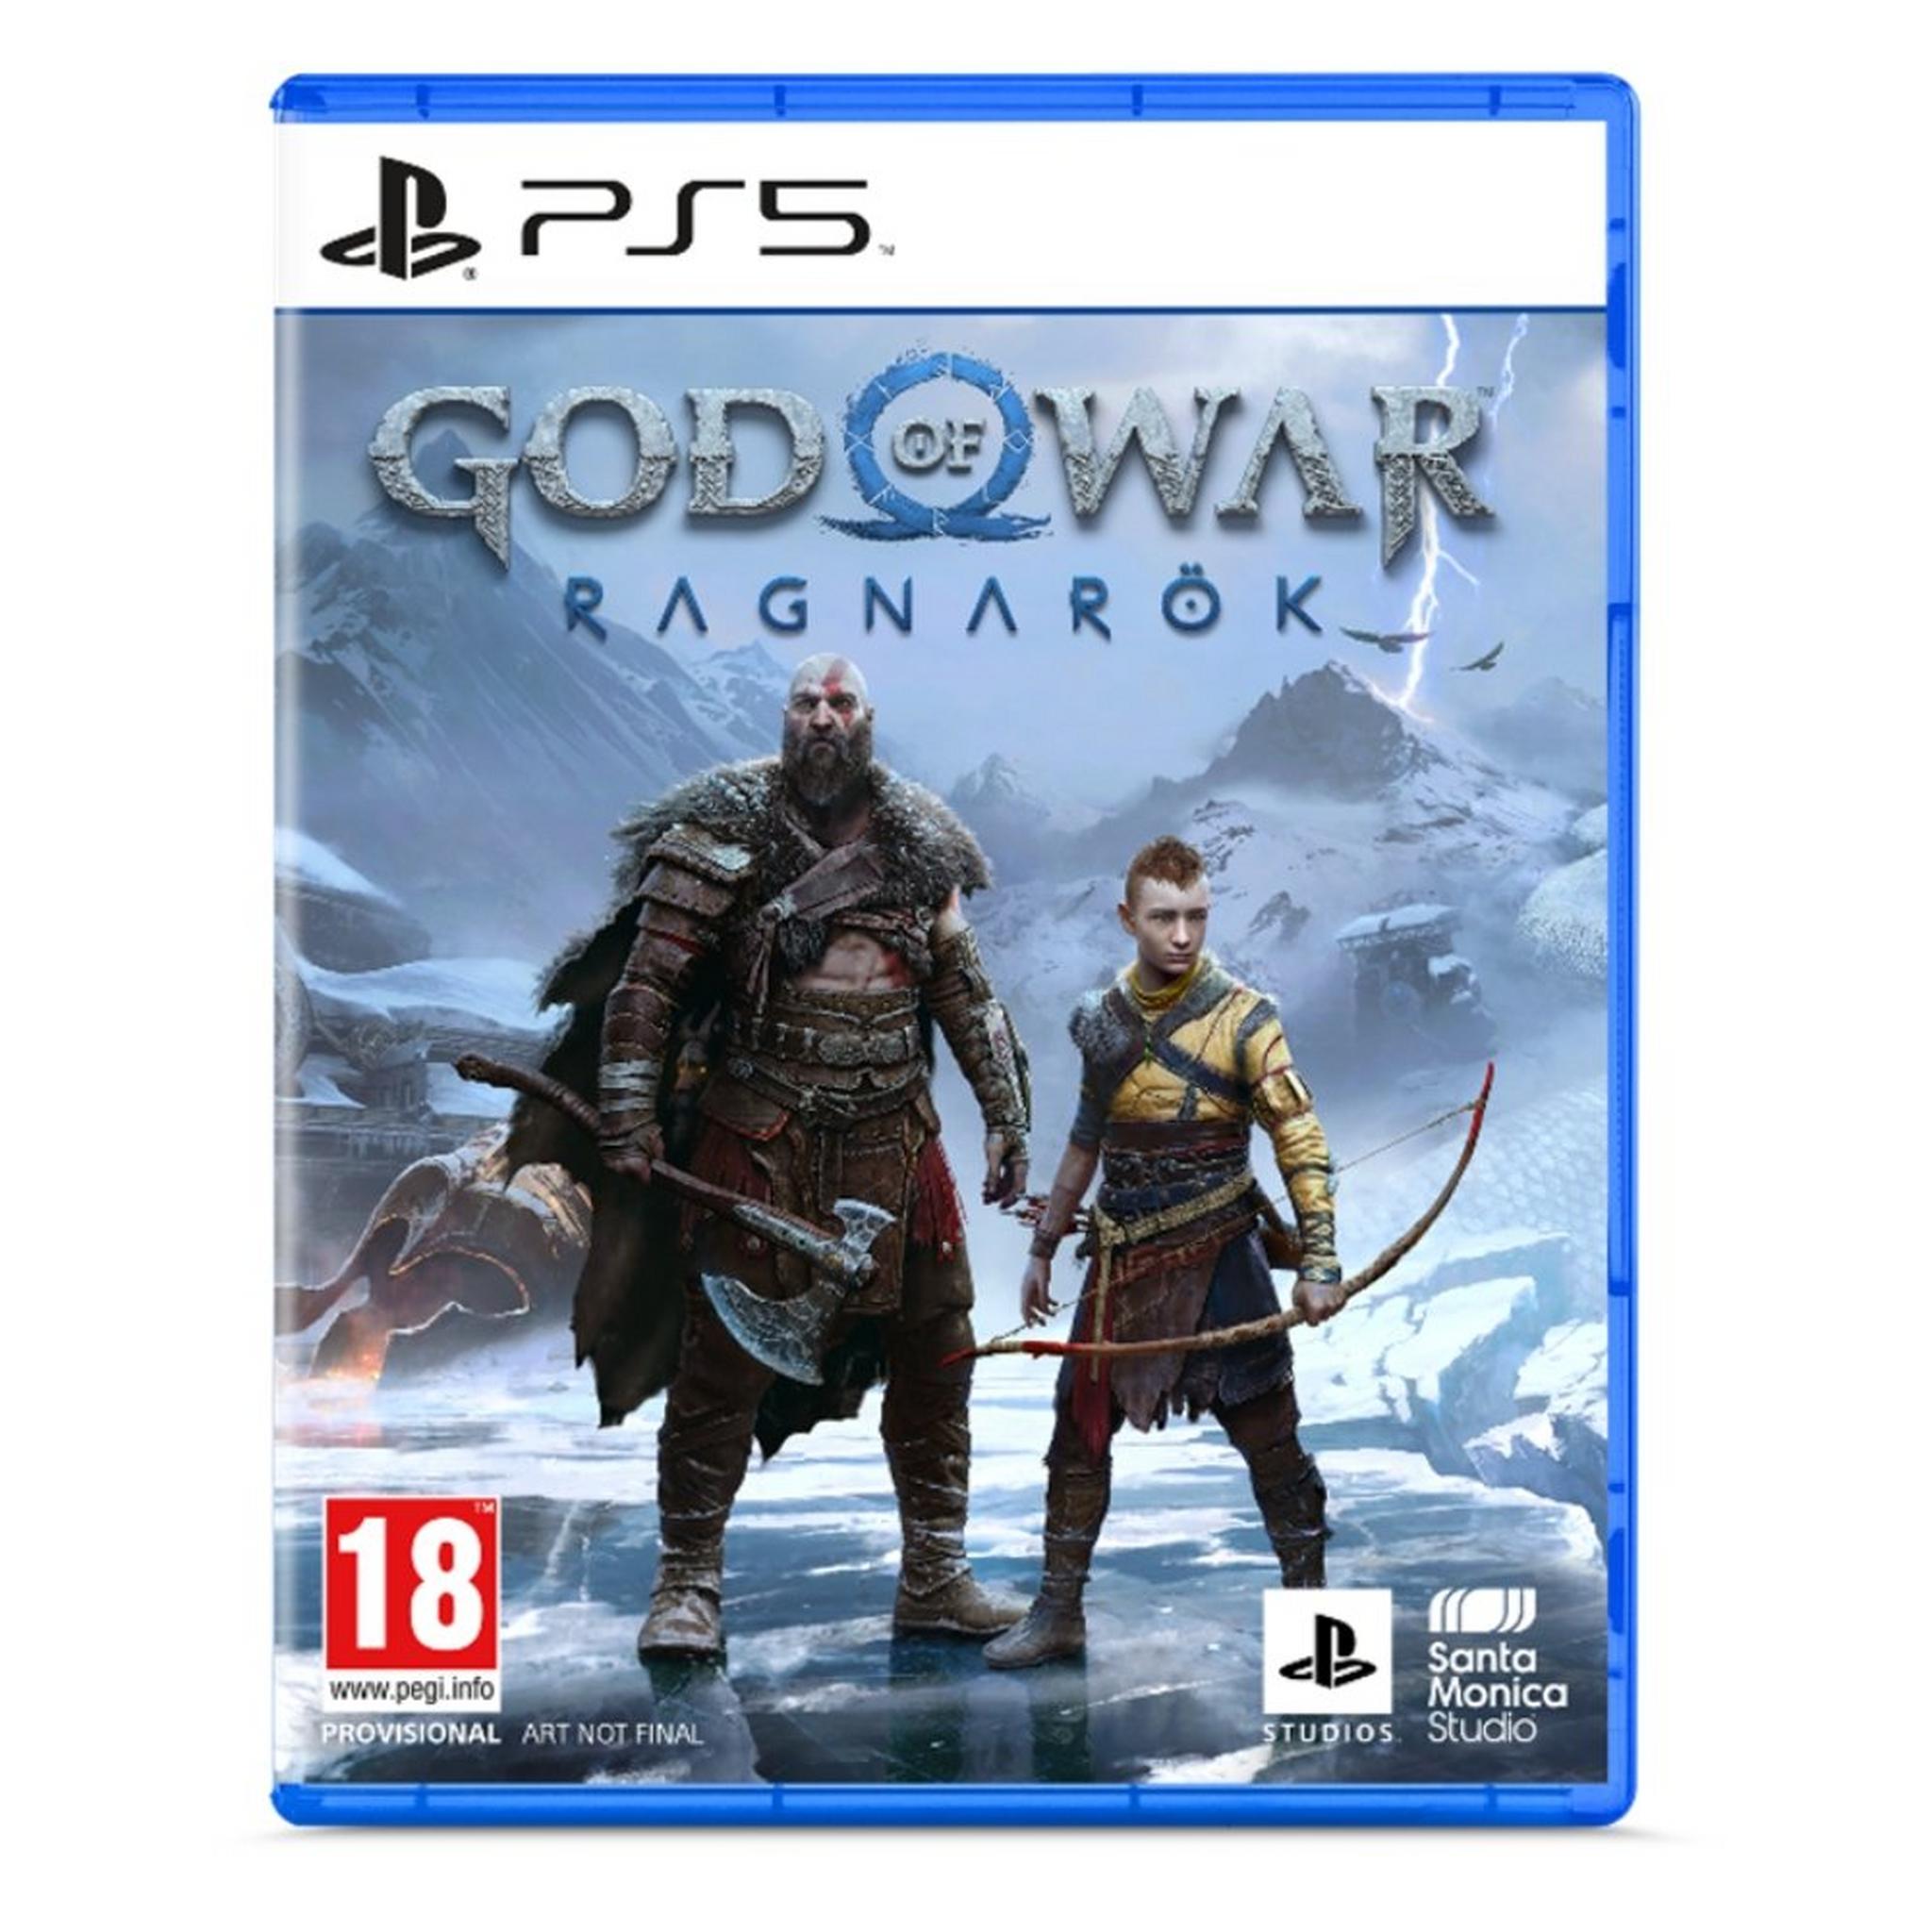 Pre-Order: PS5 God of War Ragnarök Standard Edition